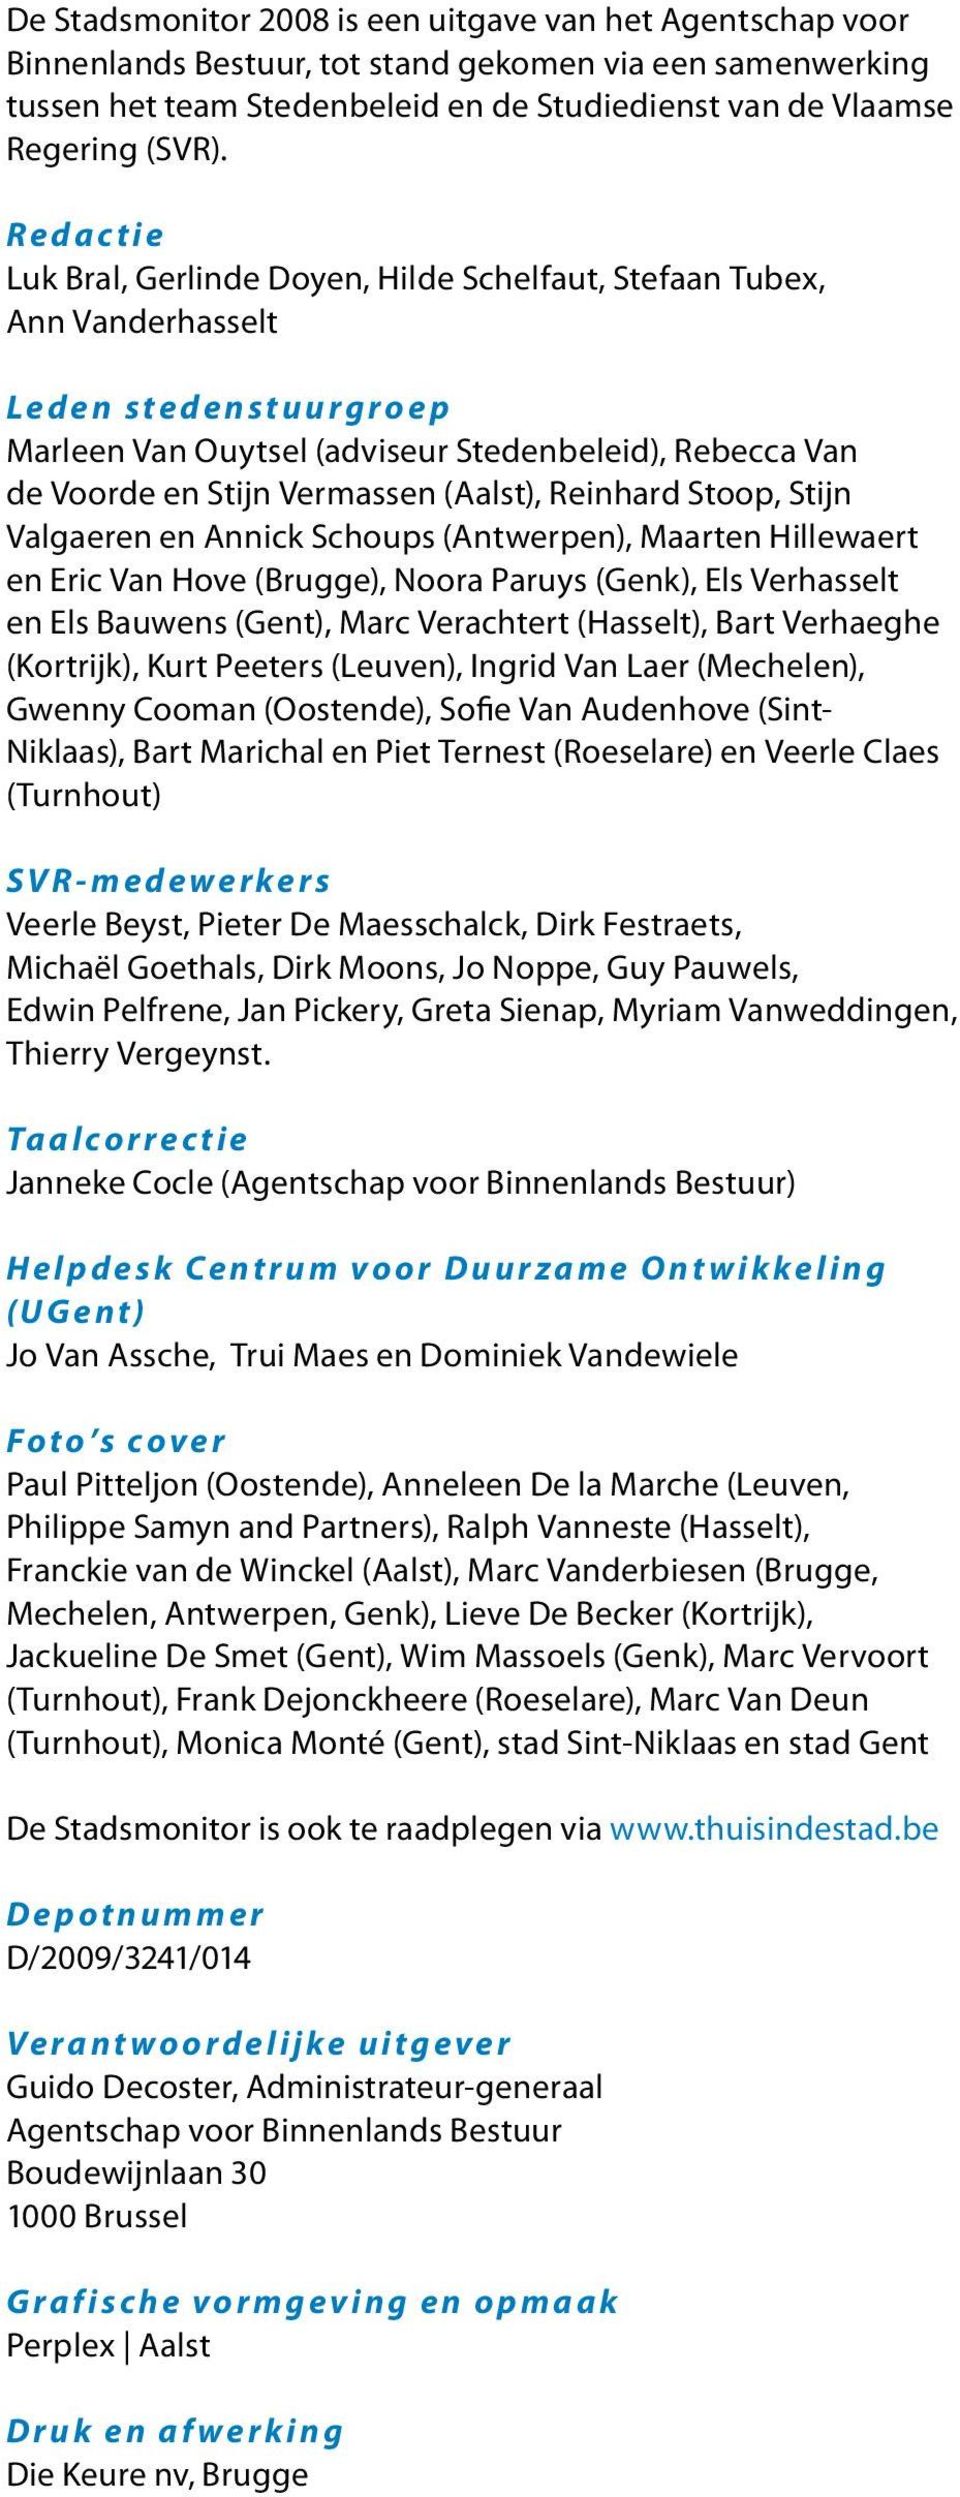 (Aalst), Reinhard Stoop, Stijn Valgaeren en Annick Schoups (Antwerpen), Maarten Hillewaert en Eric Van Hove (Brugge), Noora Paruys (Genk), Els Verhasselt en Els Bauwens (Gent), Marc Verachtert